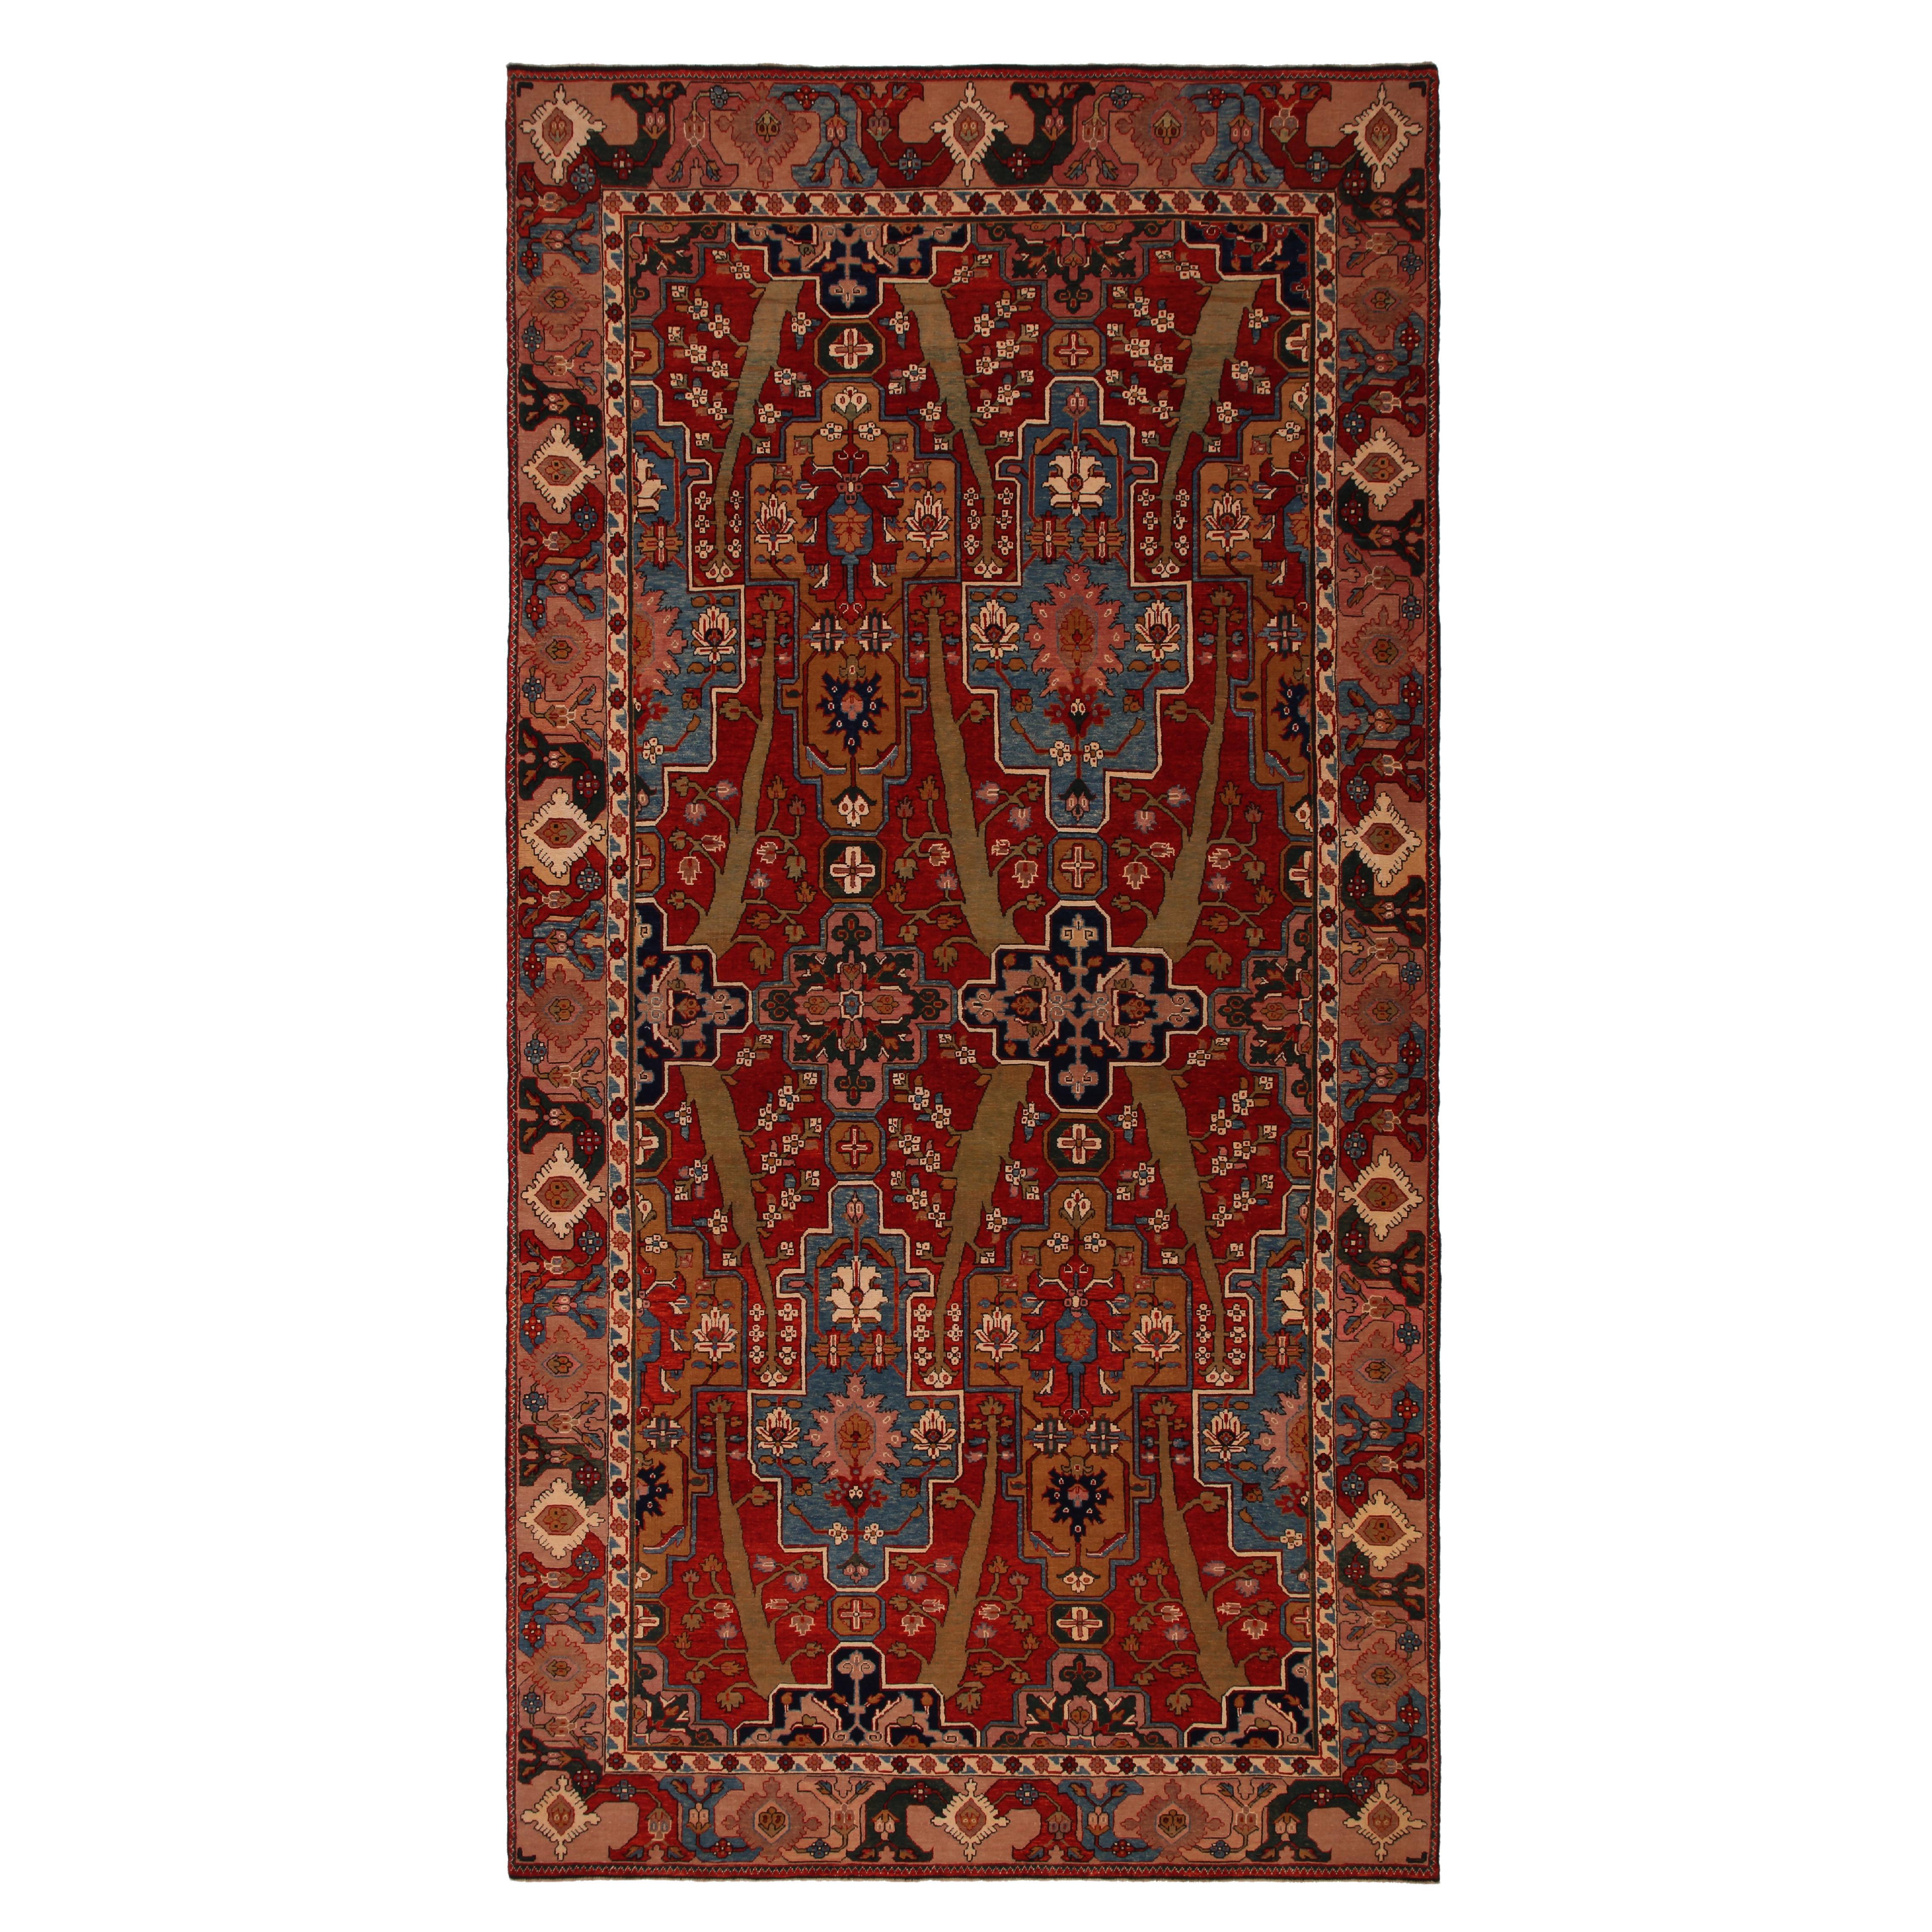 Ararat-Teppich im Barbieri-Baum-Design – Teppich im persischen Revival-Stil – Naturfarben